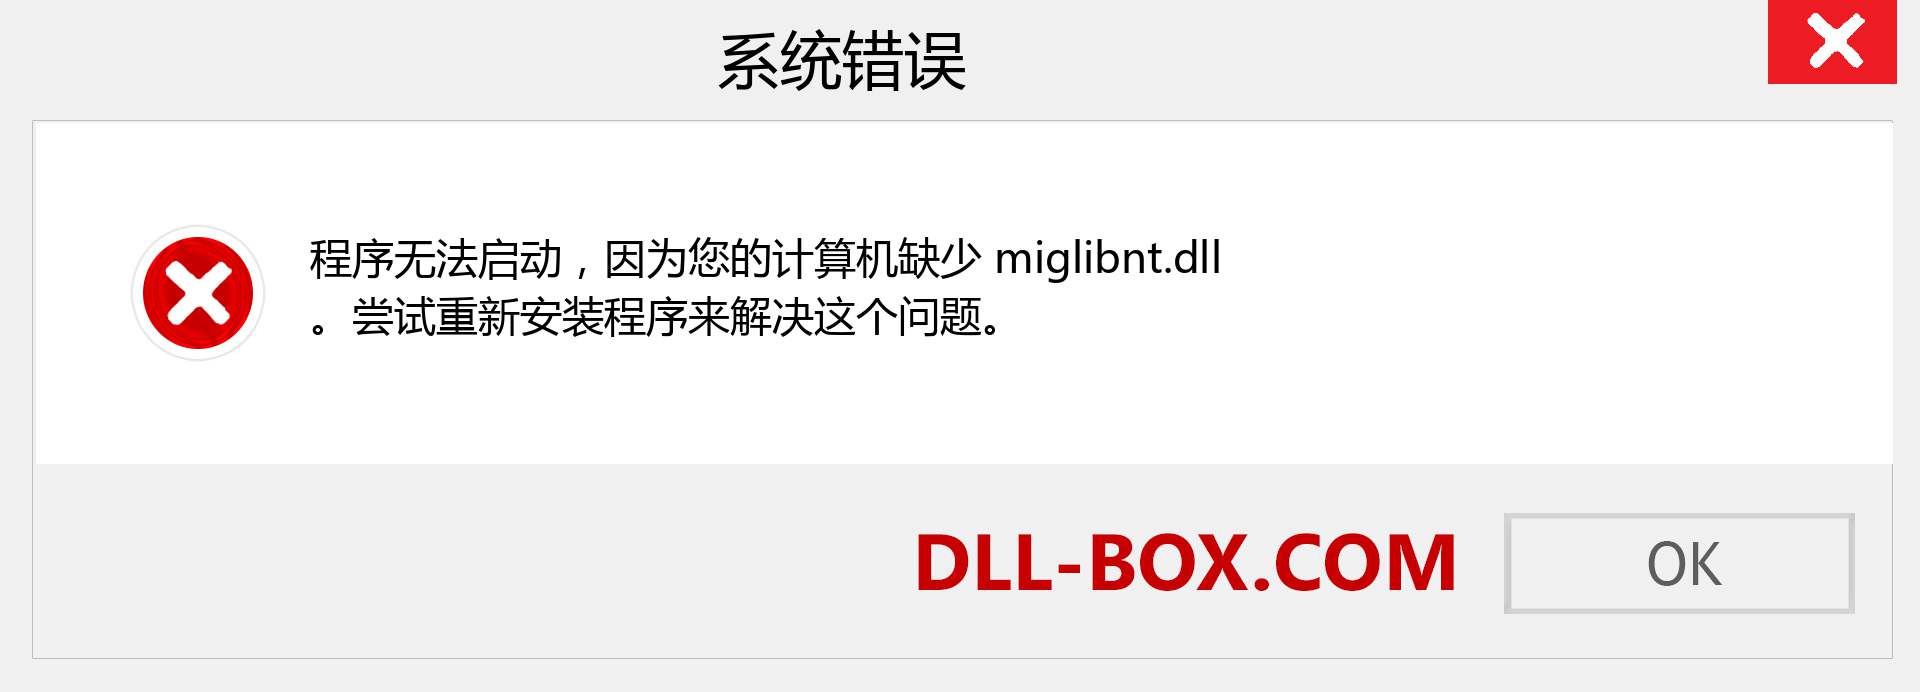 miglibnt.dll 文件丢失？。 适用于 Windows 7、8、10 的下载 - 修复 Windows、照片、图像上的 miglibnt dll 丢失错误